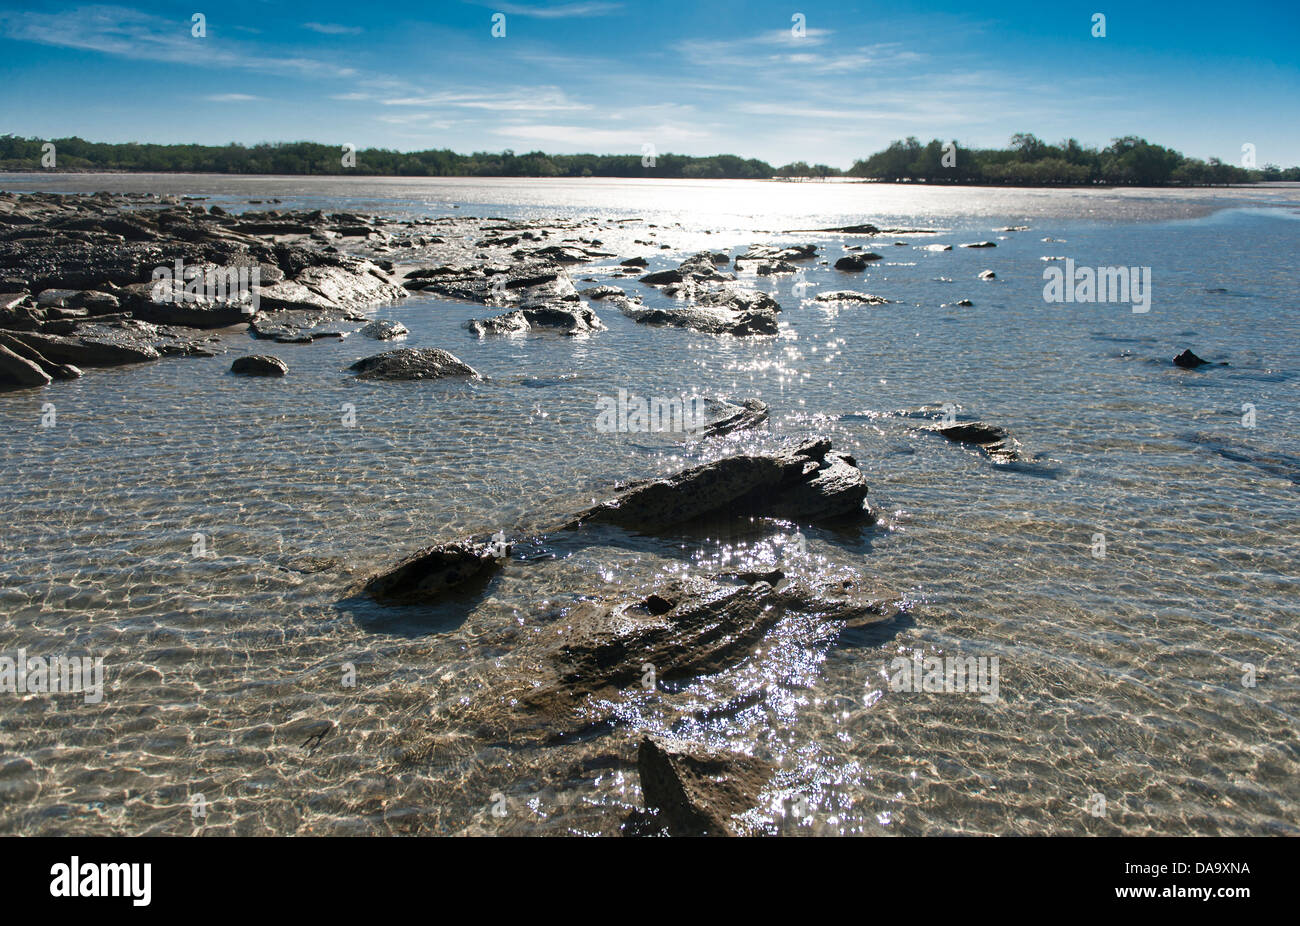 La bassa marea in corrispondenza di un punto del braccio, esponendo velme, rocce e radici di mangrovia in corrispondenza di un punto del braccio, Cape Leveque, Kimberley, Australia Foto Stock